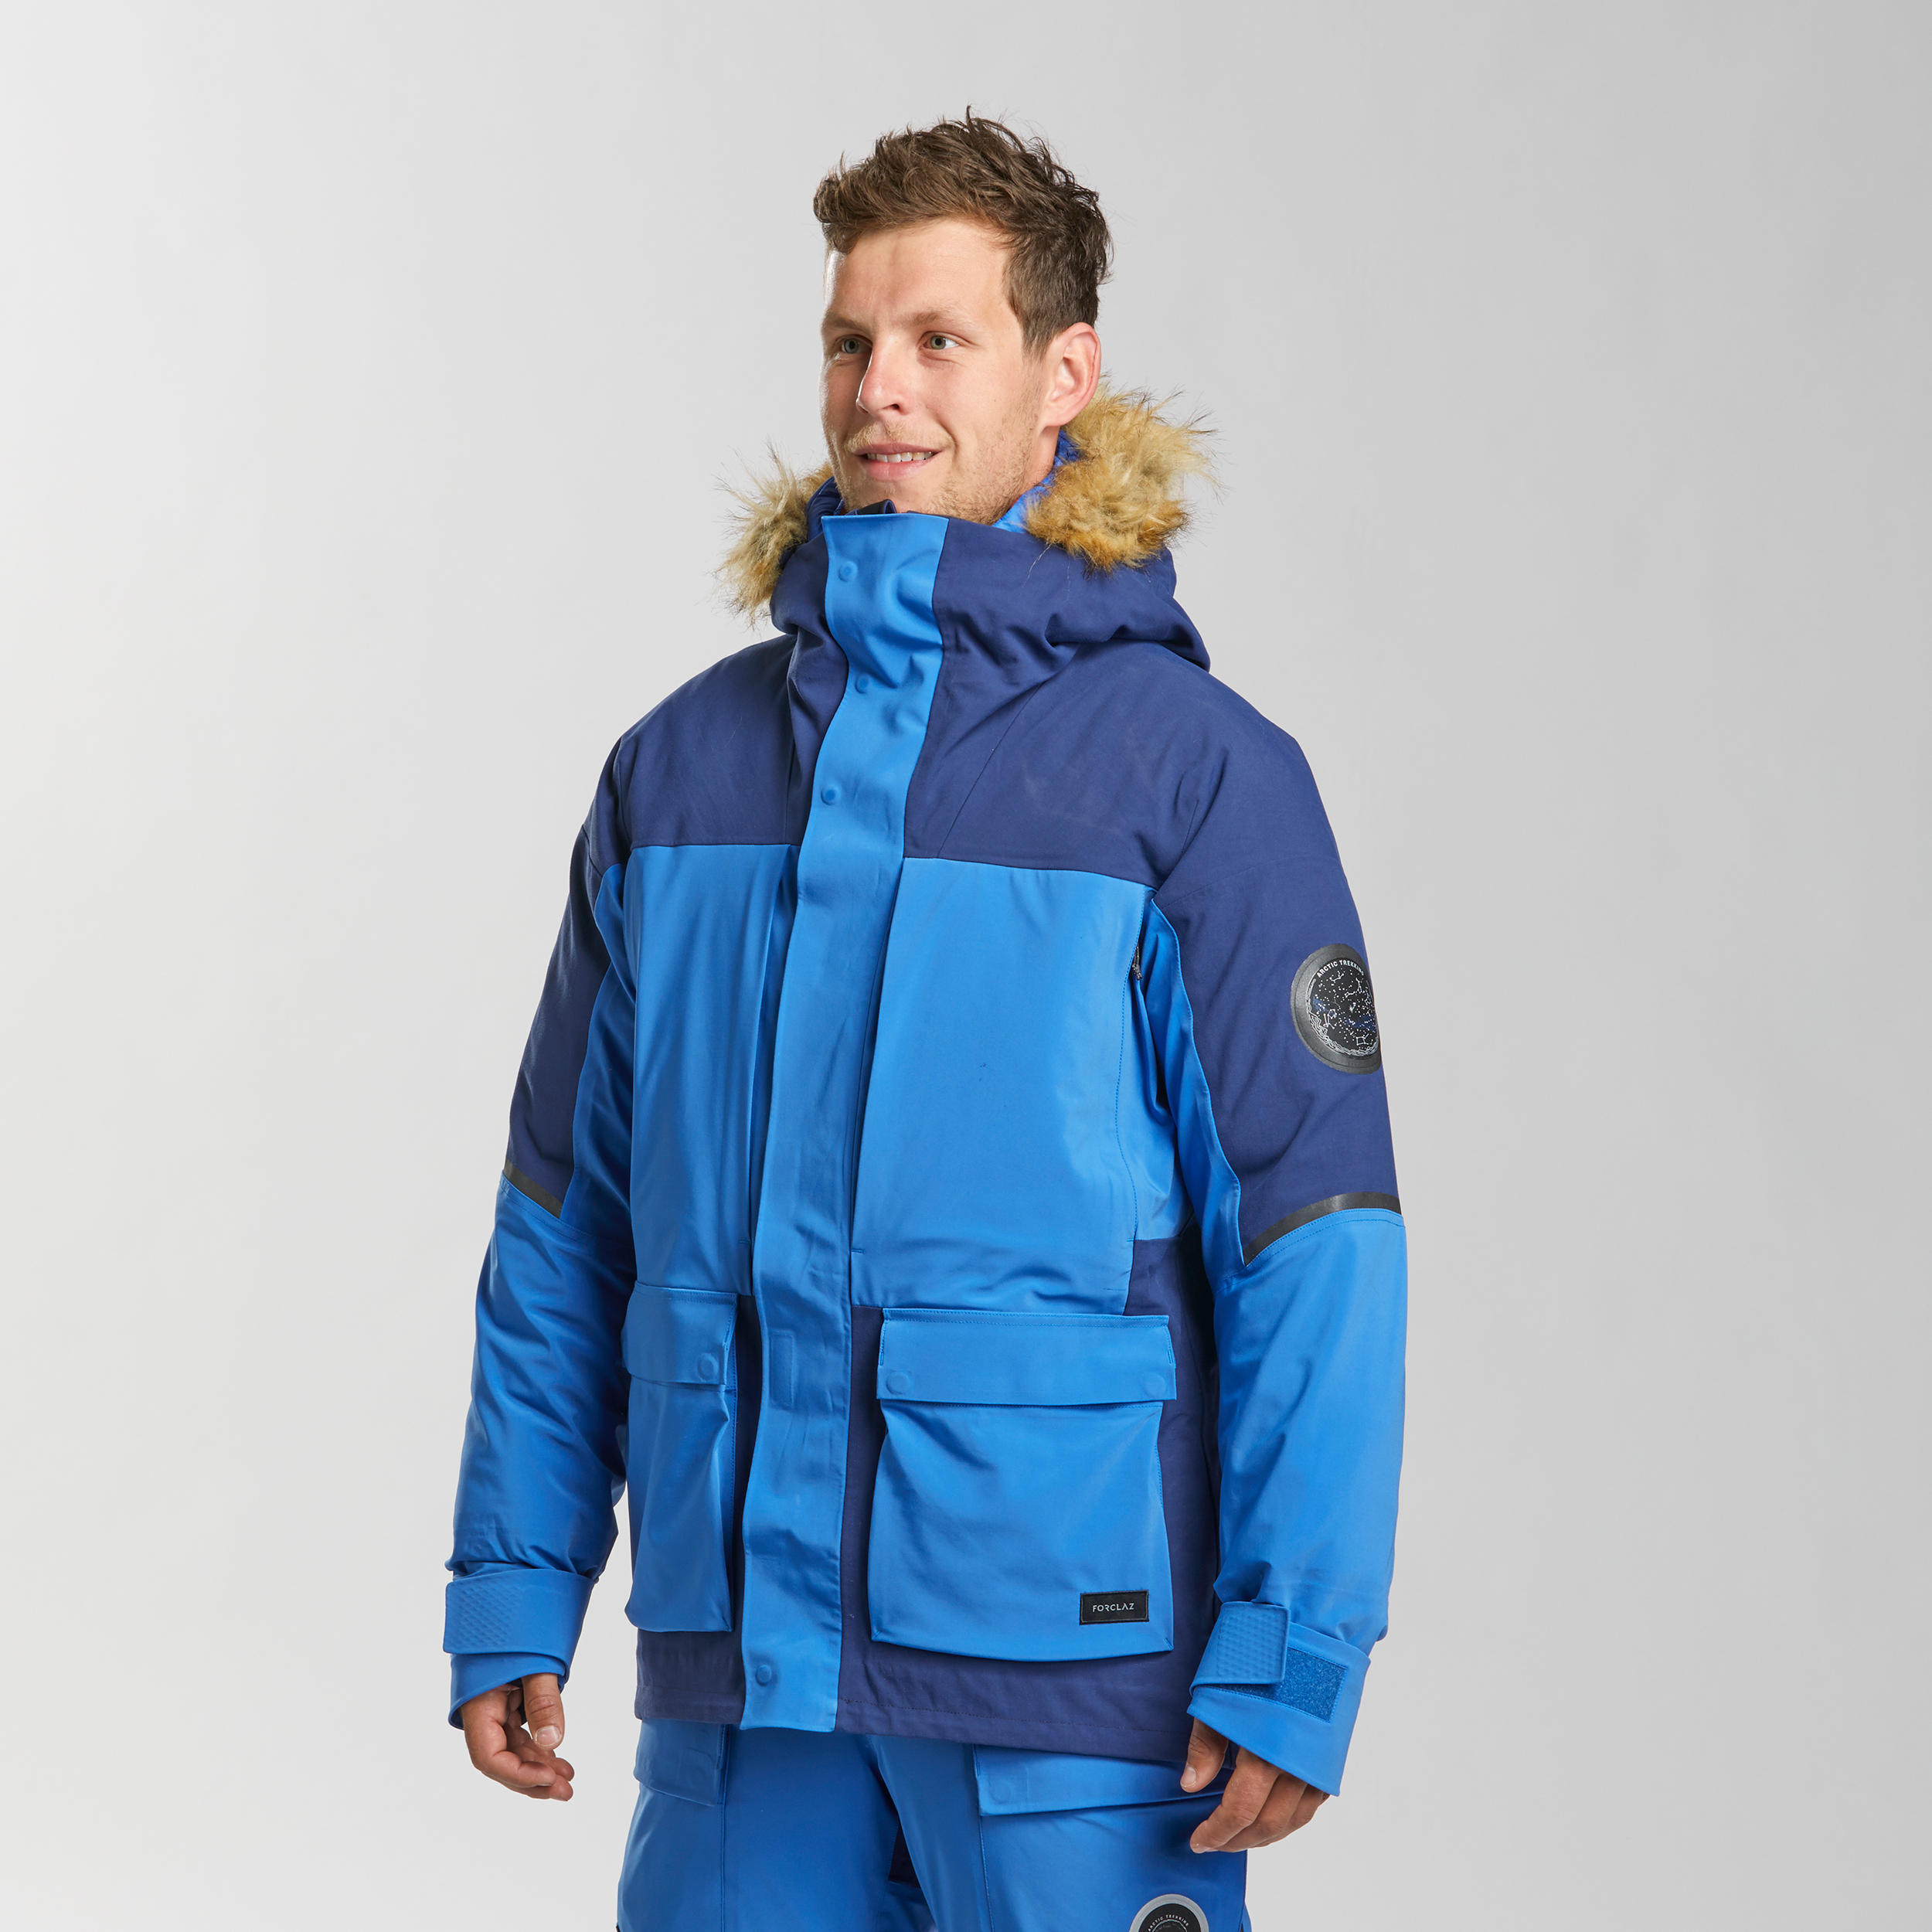 Men’s 3-in-1 modular trekking parka jacket  - ARCTIC 900 1/21